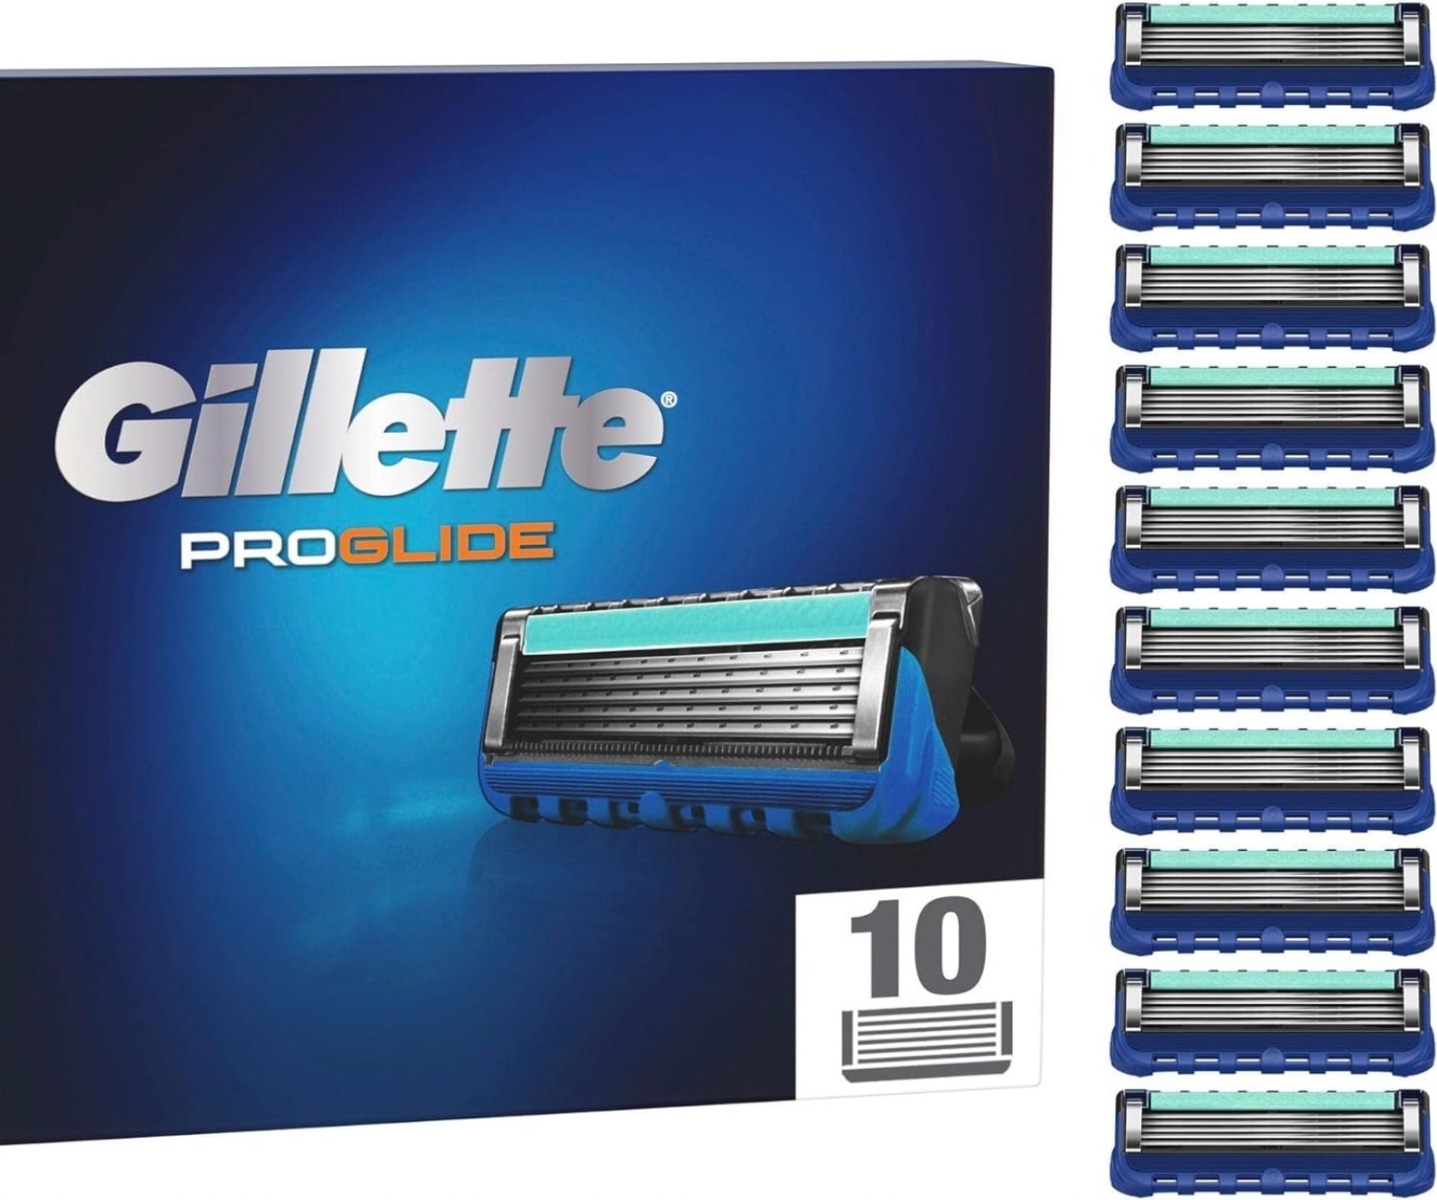 Gillette Fusion5 ProGlide 10 mesjes